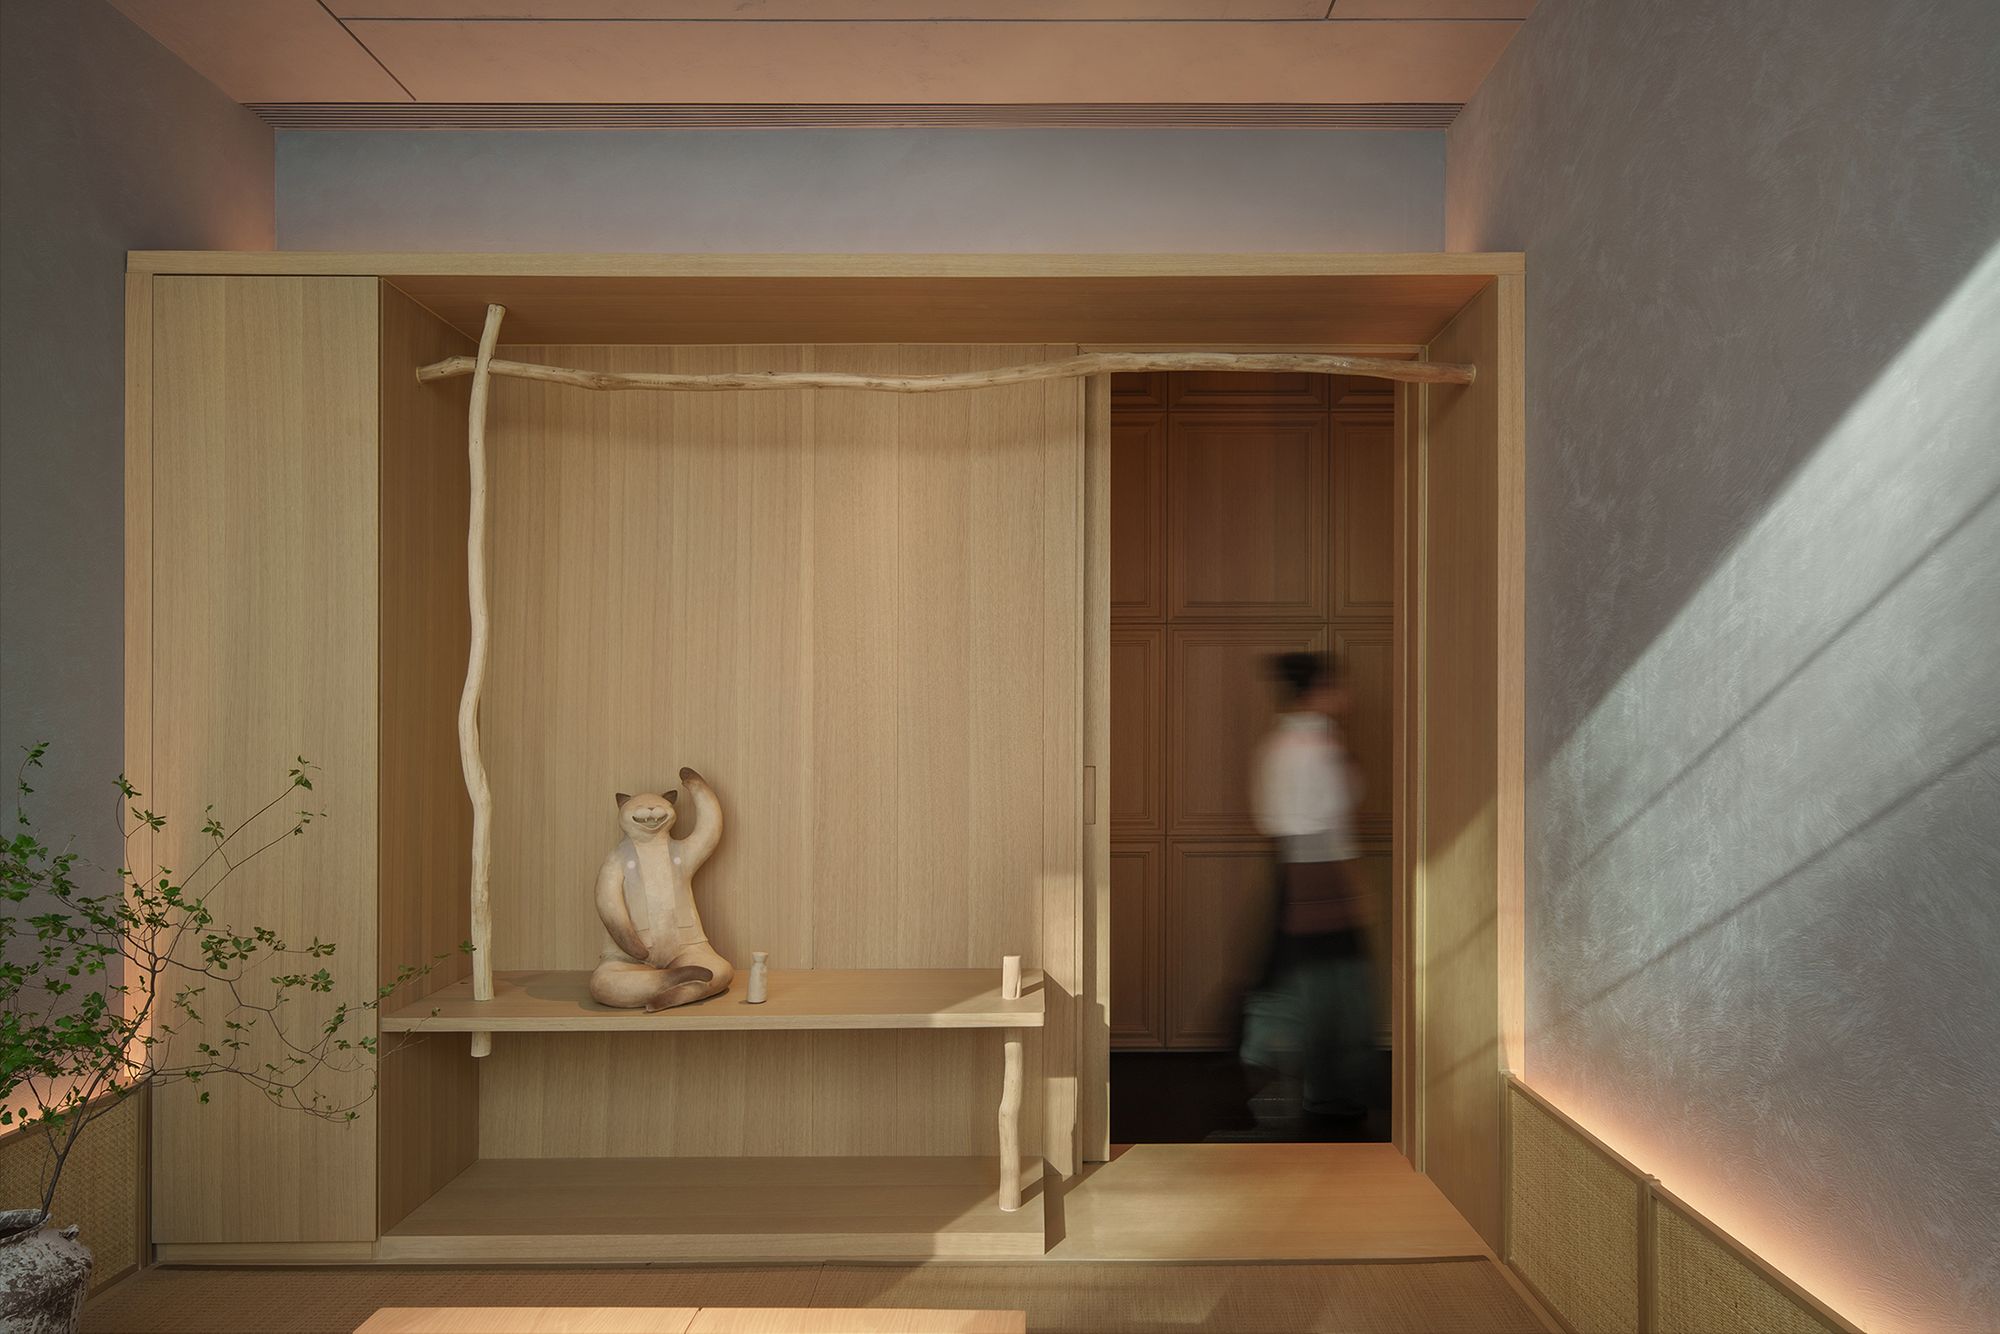 图片[7]|Aumann日本料理餐厅|ART-Arrakis | 建筑室内设计的创新与灵感